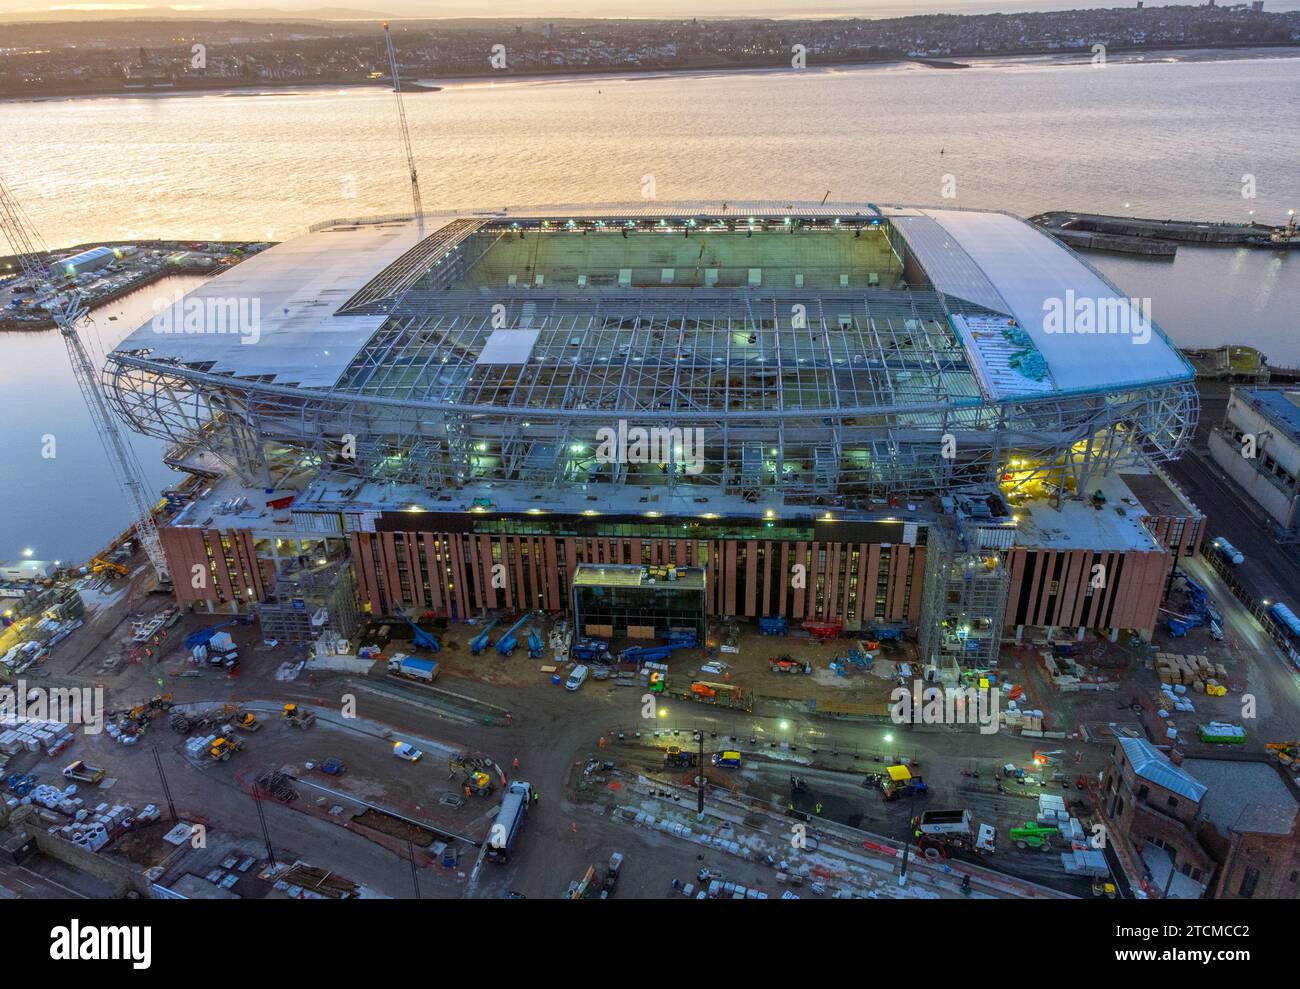 Una vista aerea mentre i lavori di costruzione continuano sul sito del nuovo stadio della squadra di calcio dell'Everton, Bramley-Moore Dock, Liverpool. Data immagine: Data di emissione: Mercoledì 13 dicembre 2023. Foto Stock